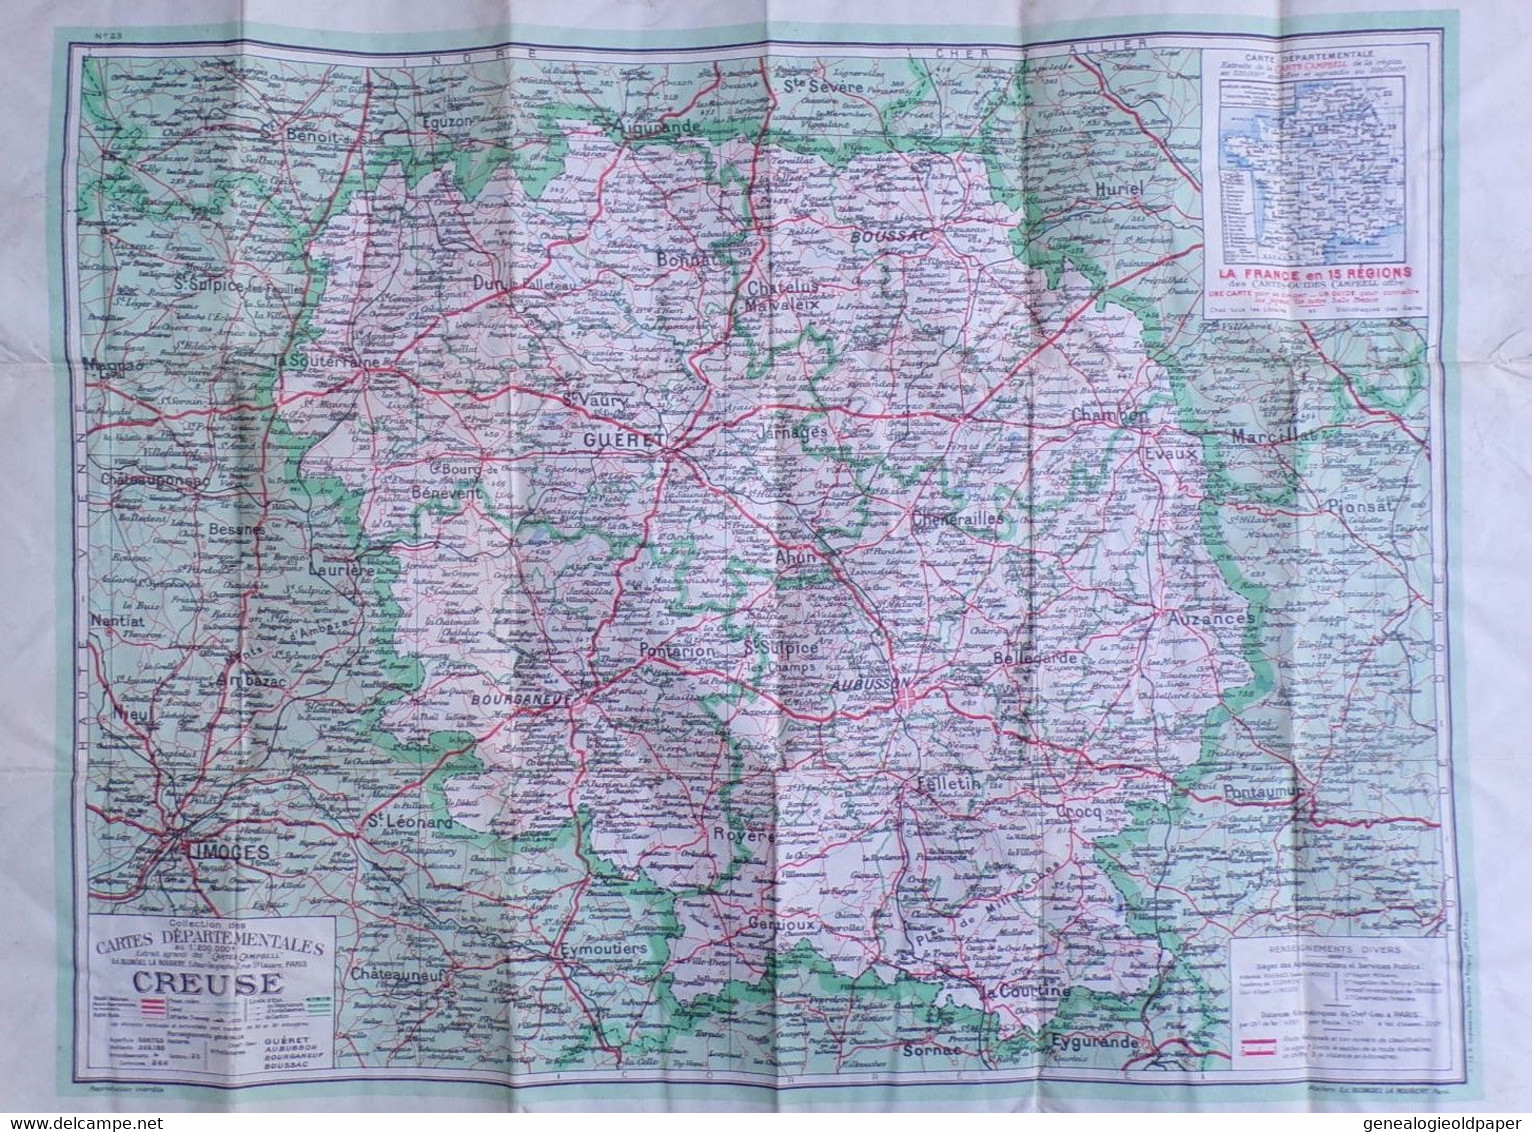 23-ROYERE-CARTE GEOGRAPHIQUE 1961-ST SAINT MARTIN CHATEAU-PARDOUX-BEAUMONT-VILLE DIEU-FAUX MONTAGNE-GENTIOUX-FENIERS- - Topographical Maps